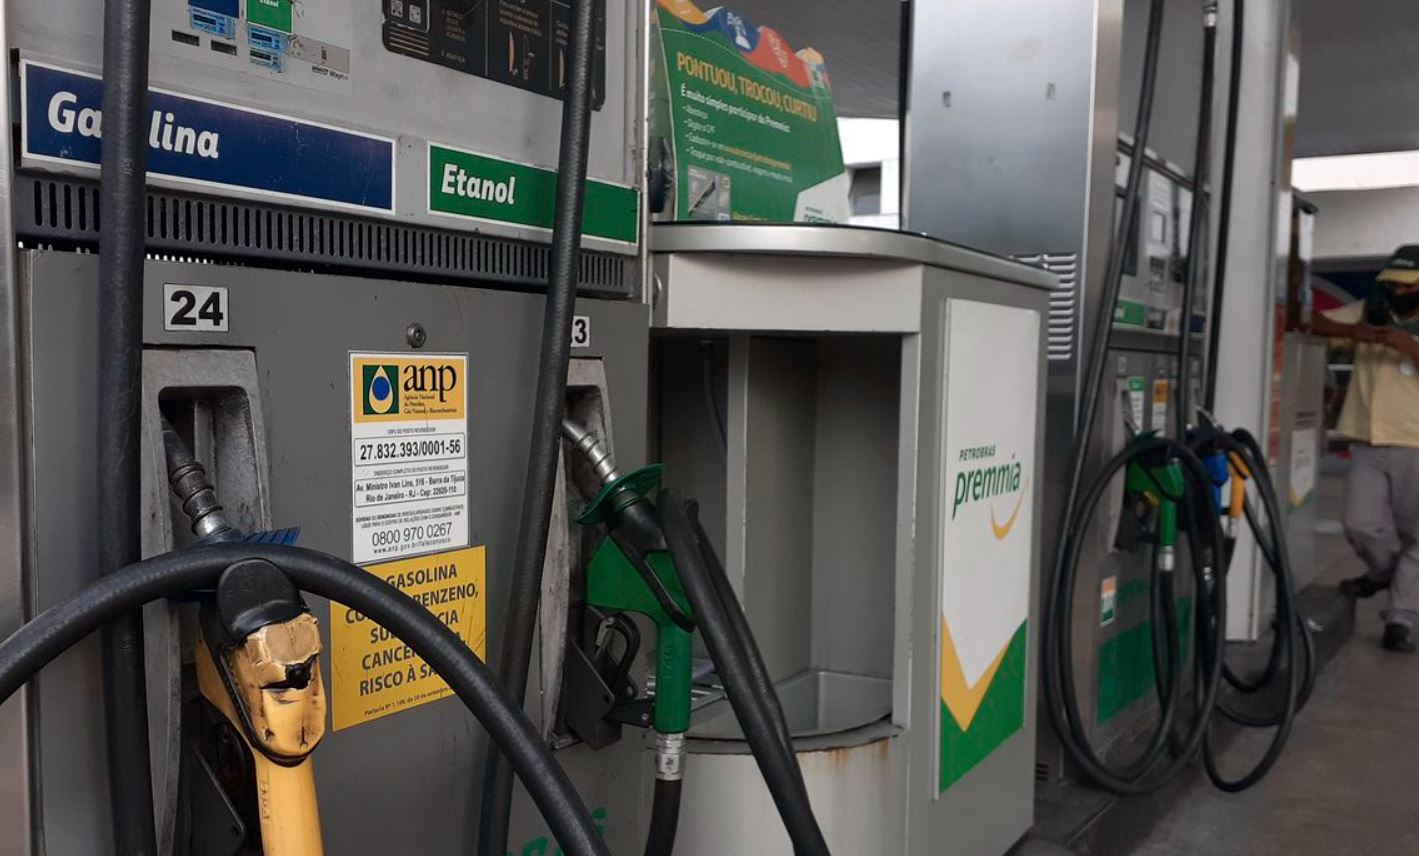 Os preços médios do etanol mostraram-se vantajoso com os da gasolina em cinco Estados brasileiros - São Paulo, Minas Gerais, Mato Grosso, Goiás e Tocantins.